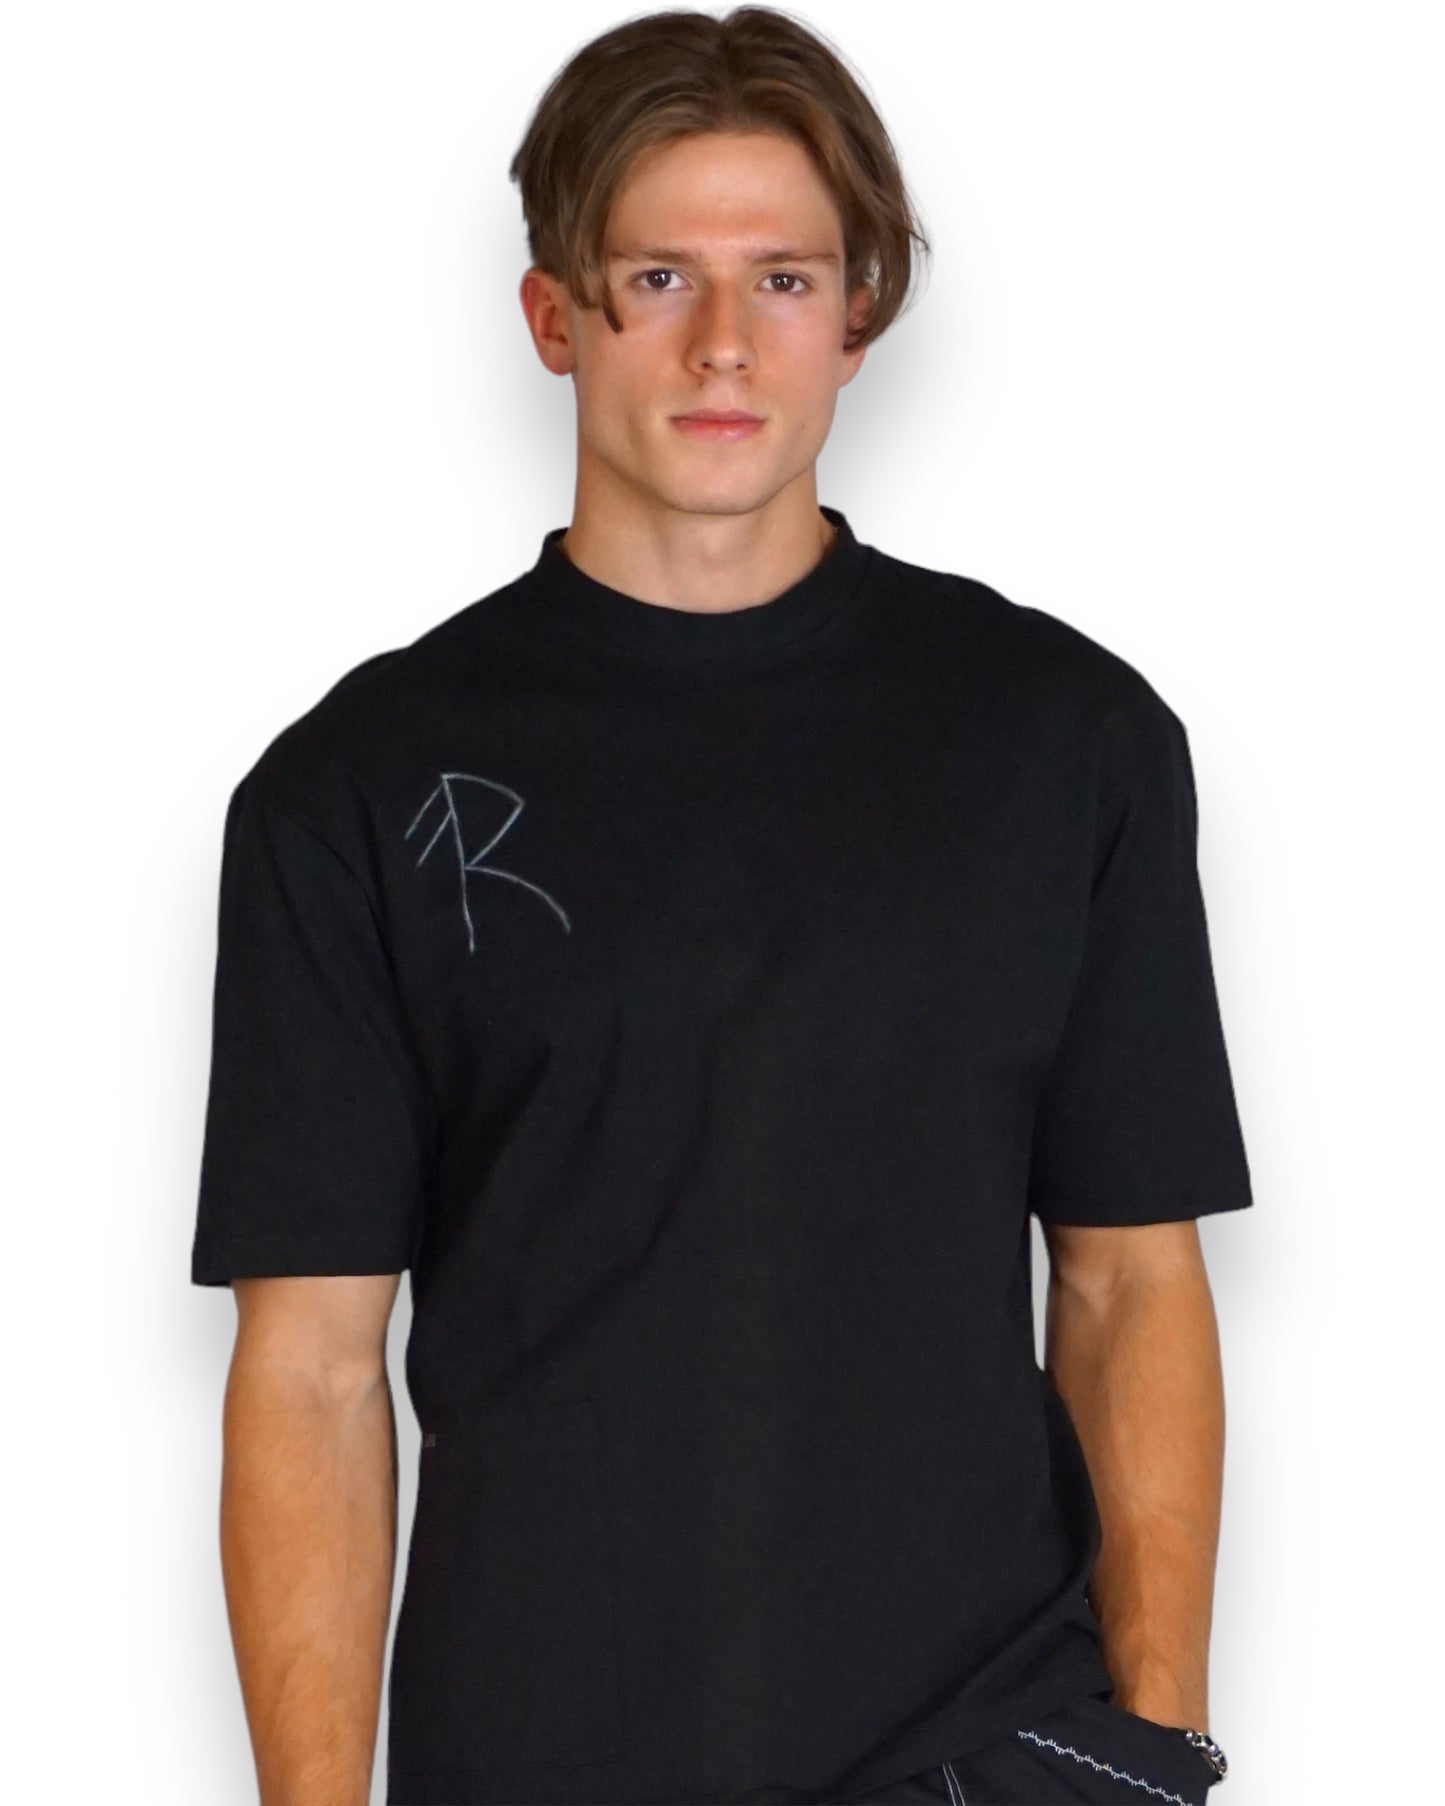 T-Shirt in schwarz mit Rune (Unisex)